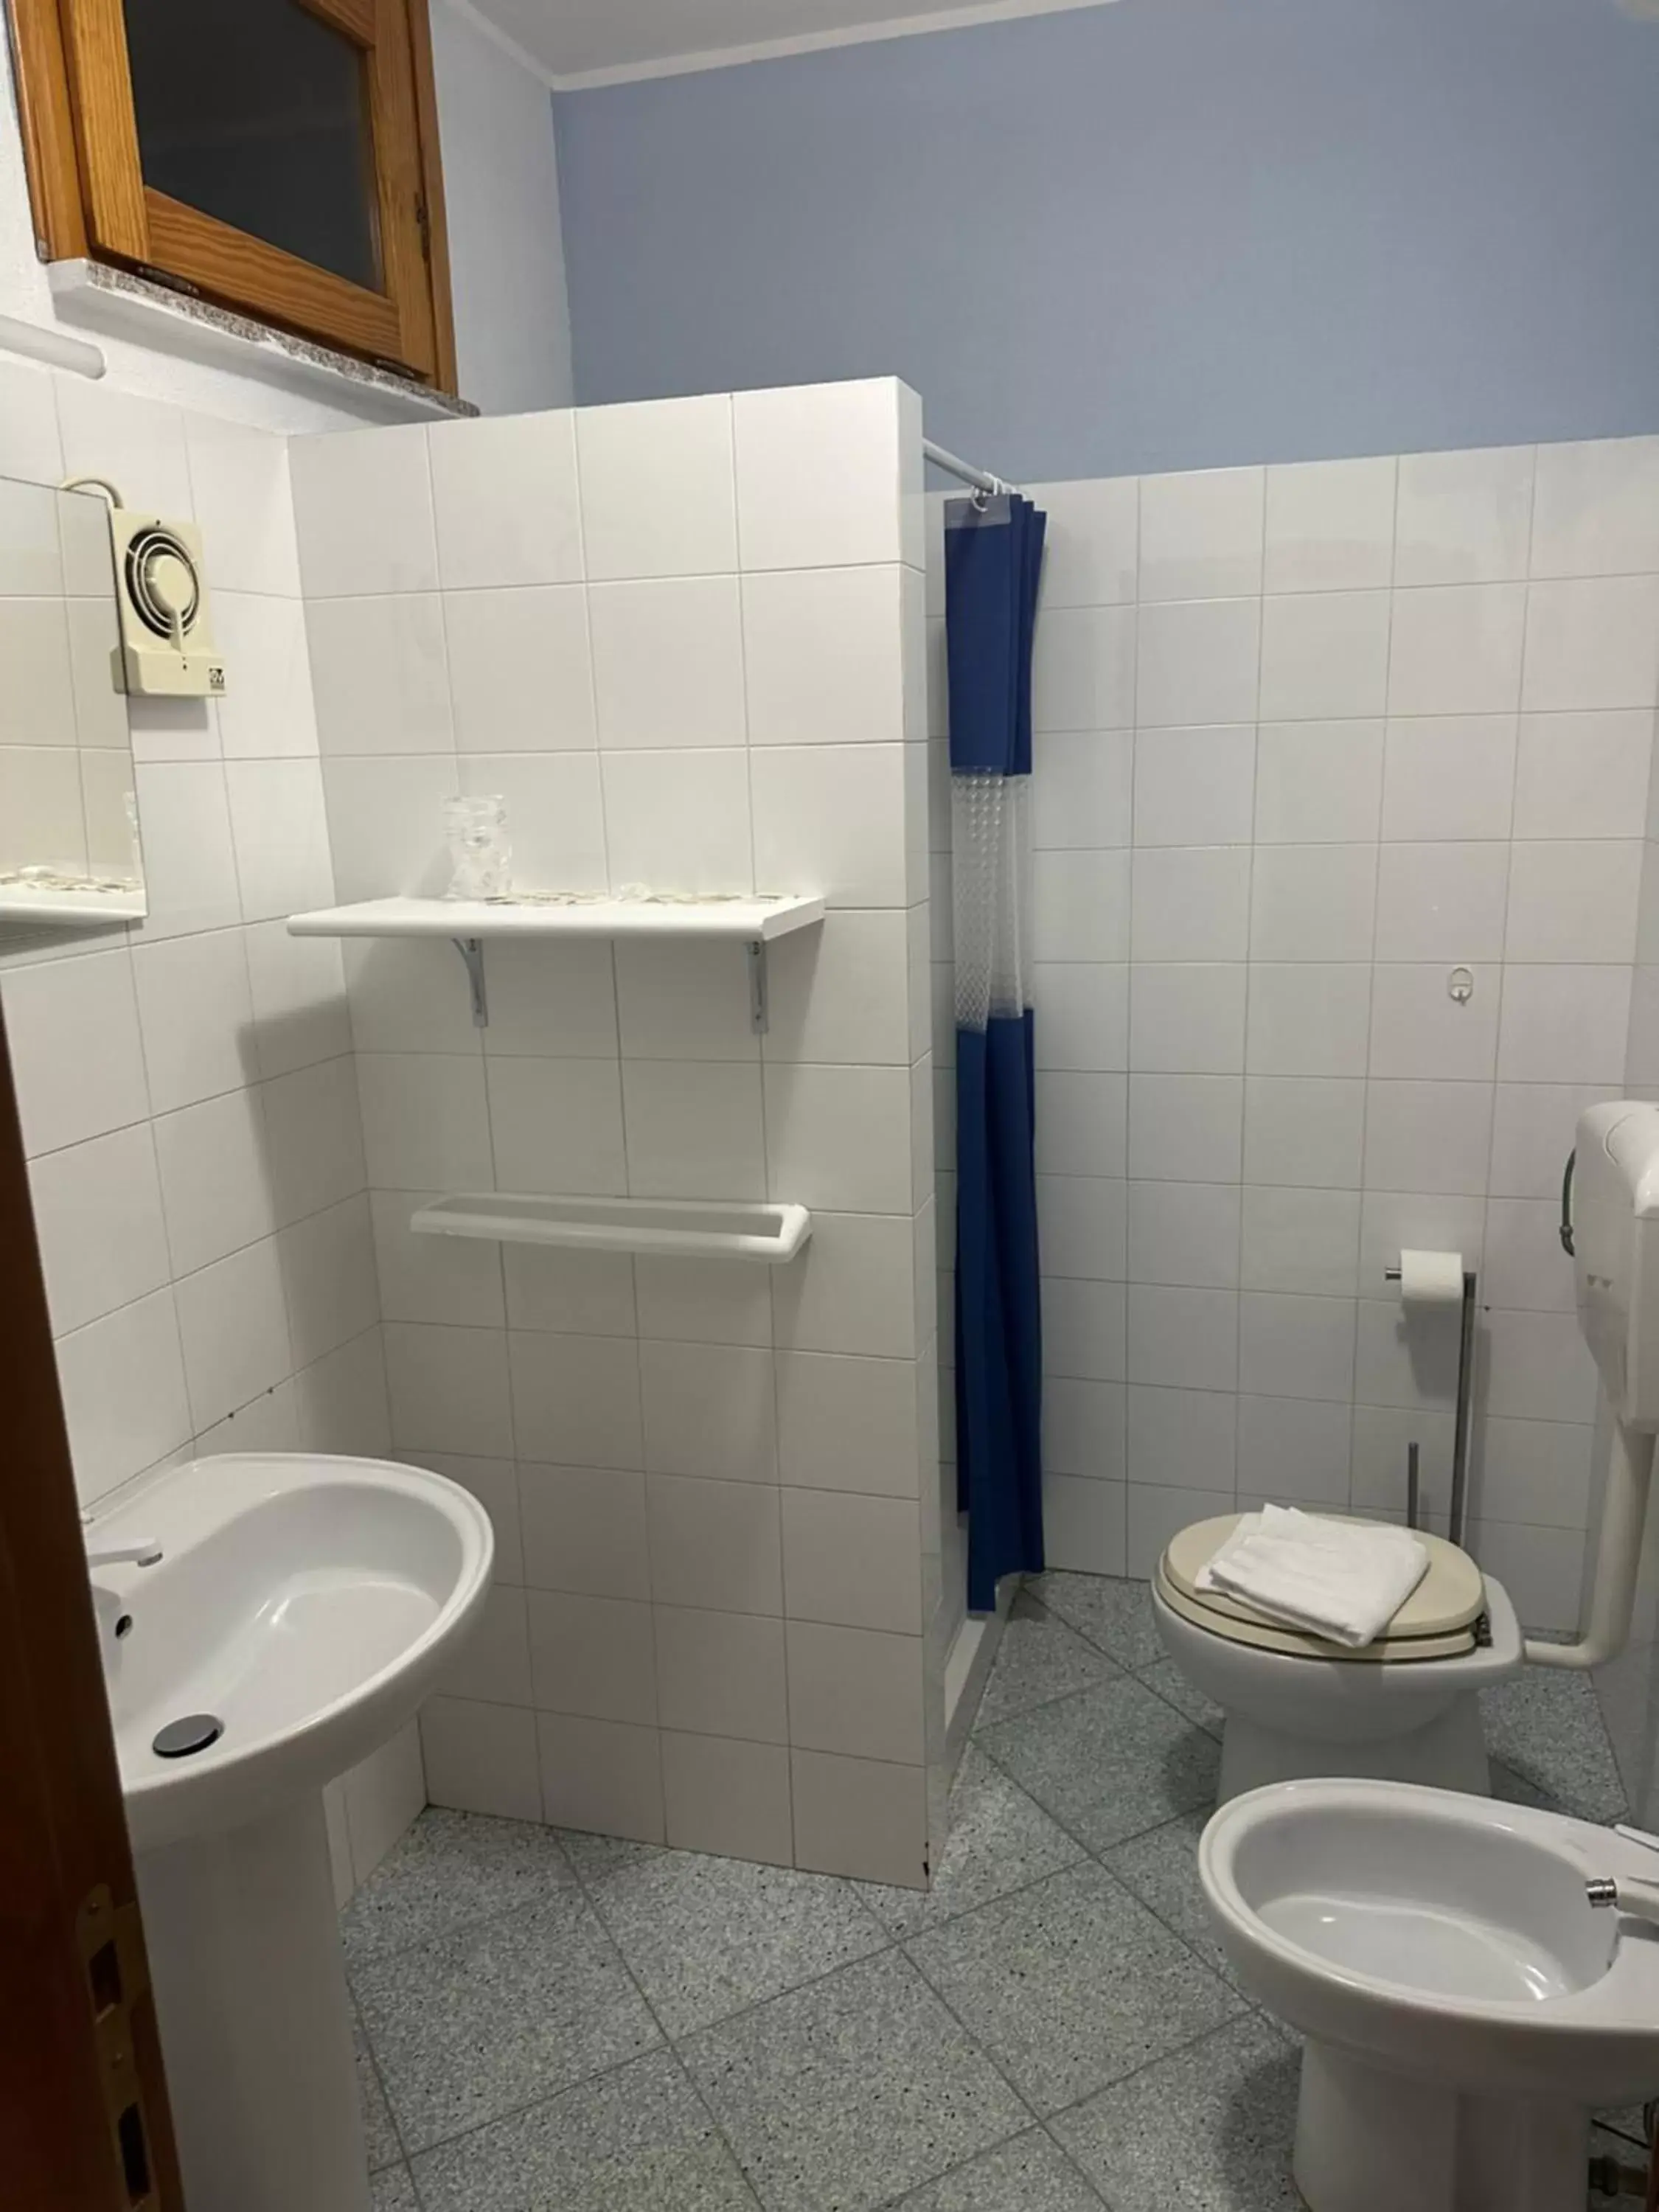 Bathroom in Le stanze del mare